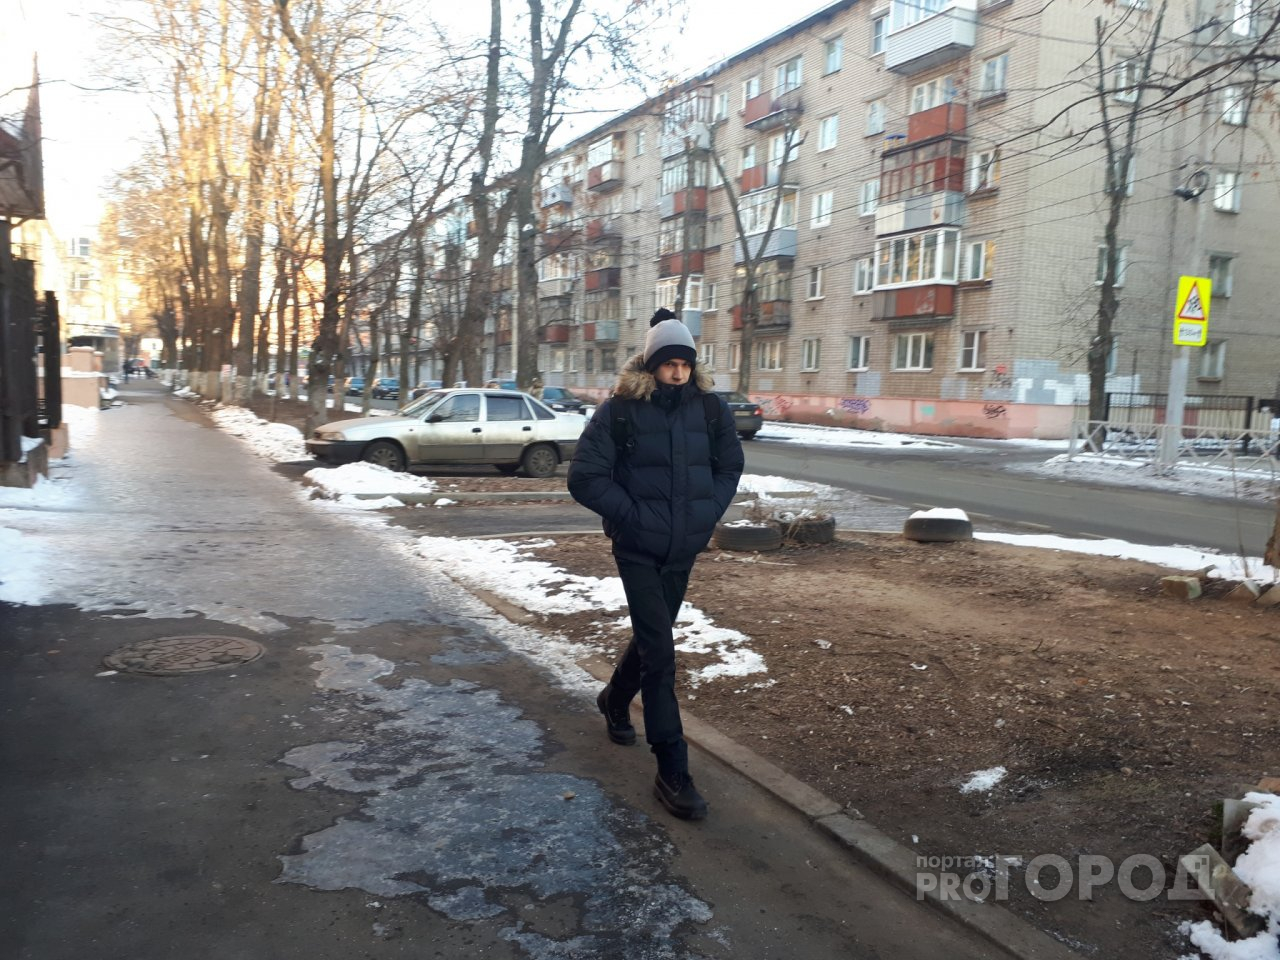 Замерзнет все за час: синоптики о резком похолодании в Ярославле